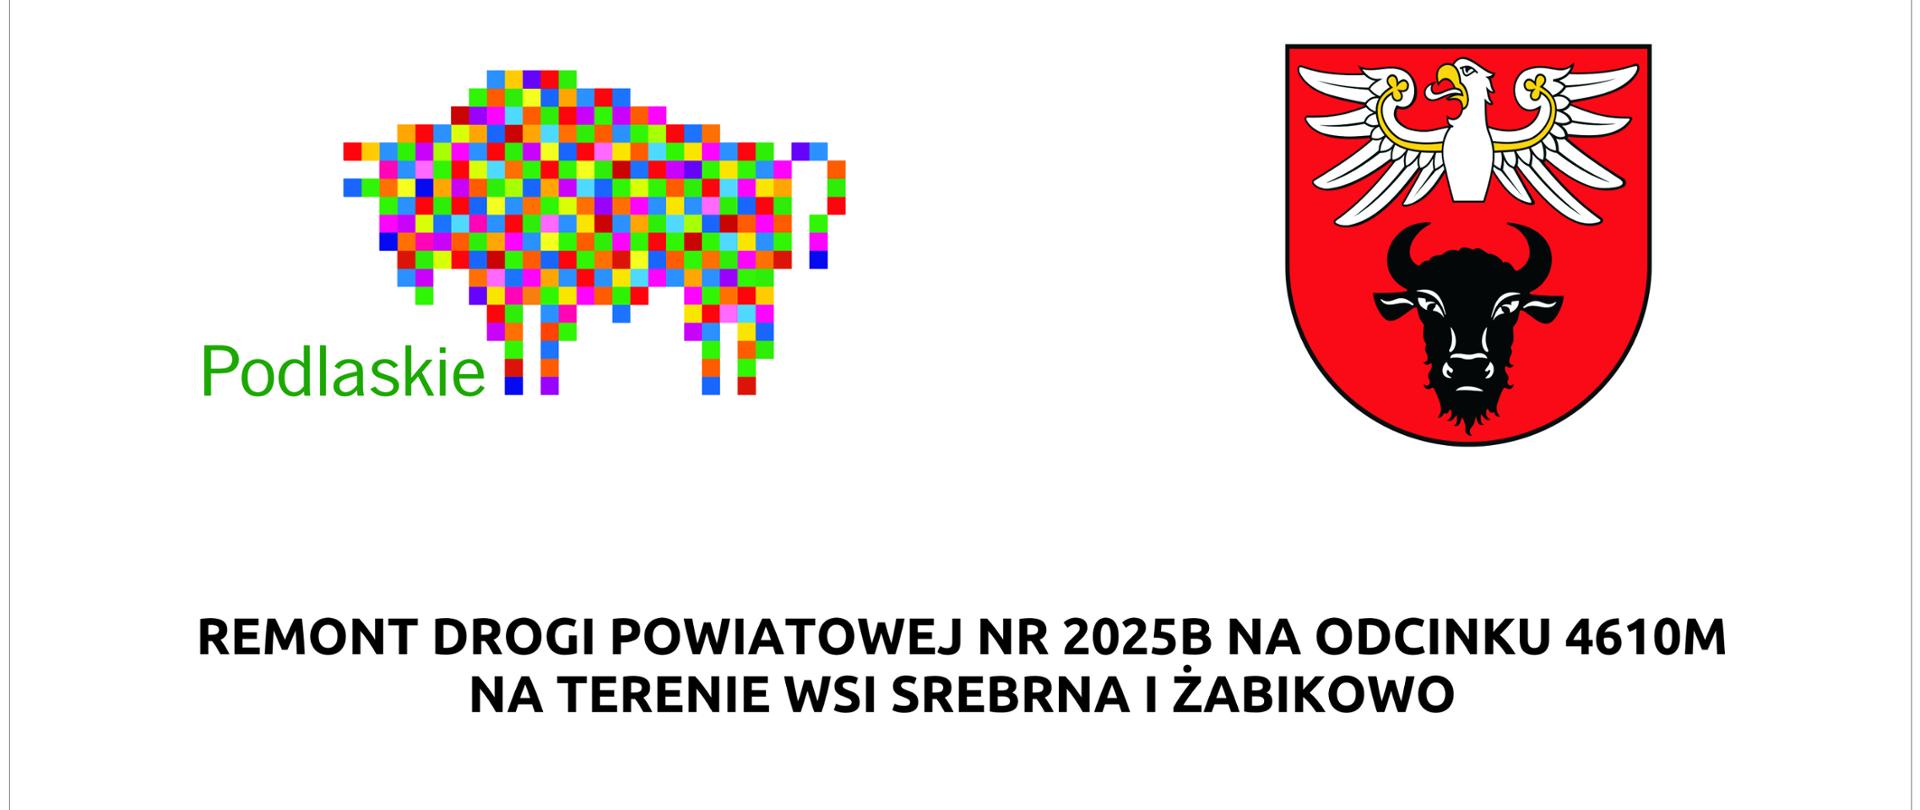 Remont Drogi Powiatowej Nr 2025B na odcinku 4610M na terenie wsi Srebrna i Żabikowo